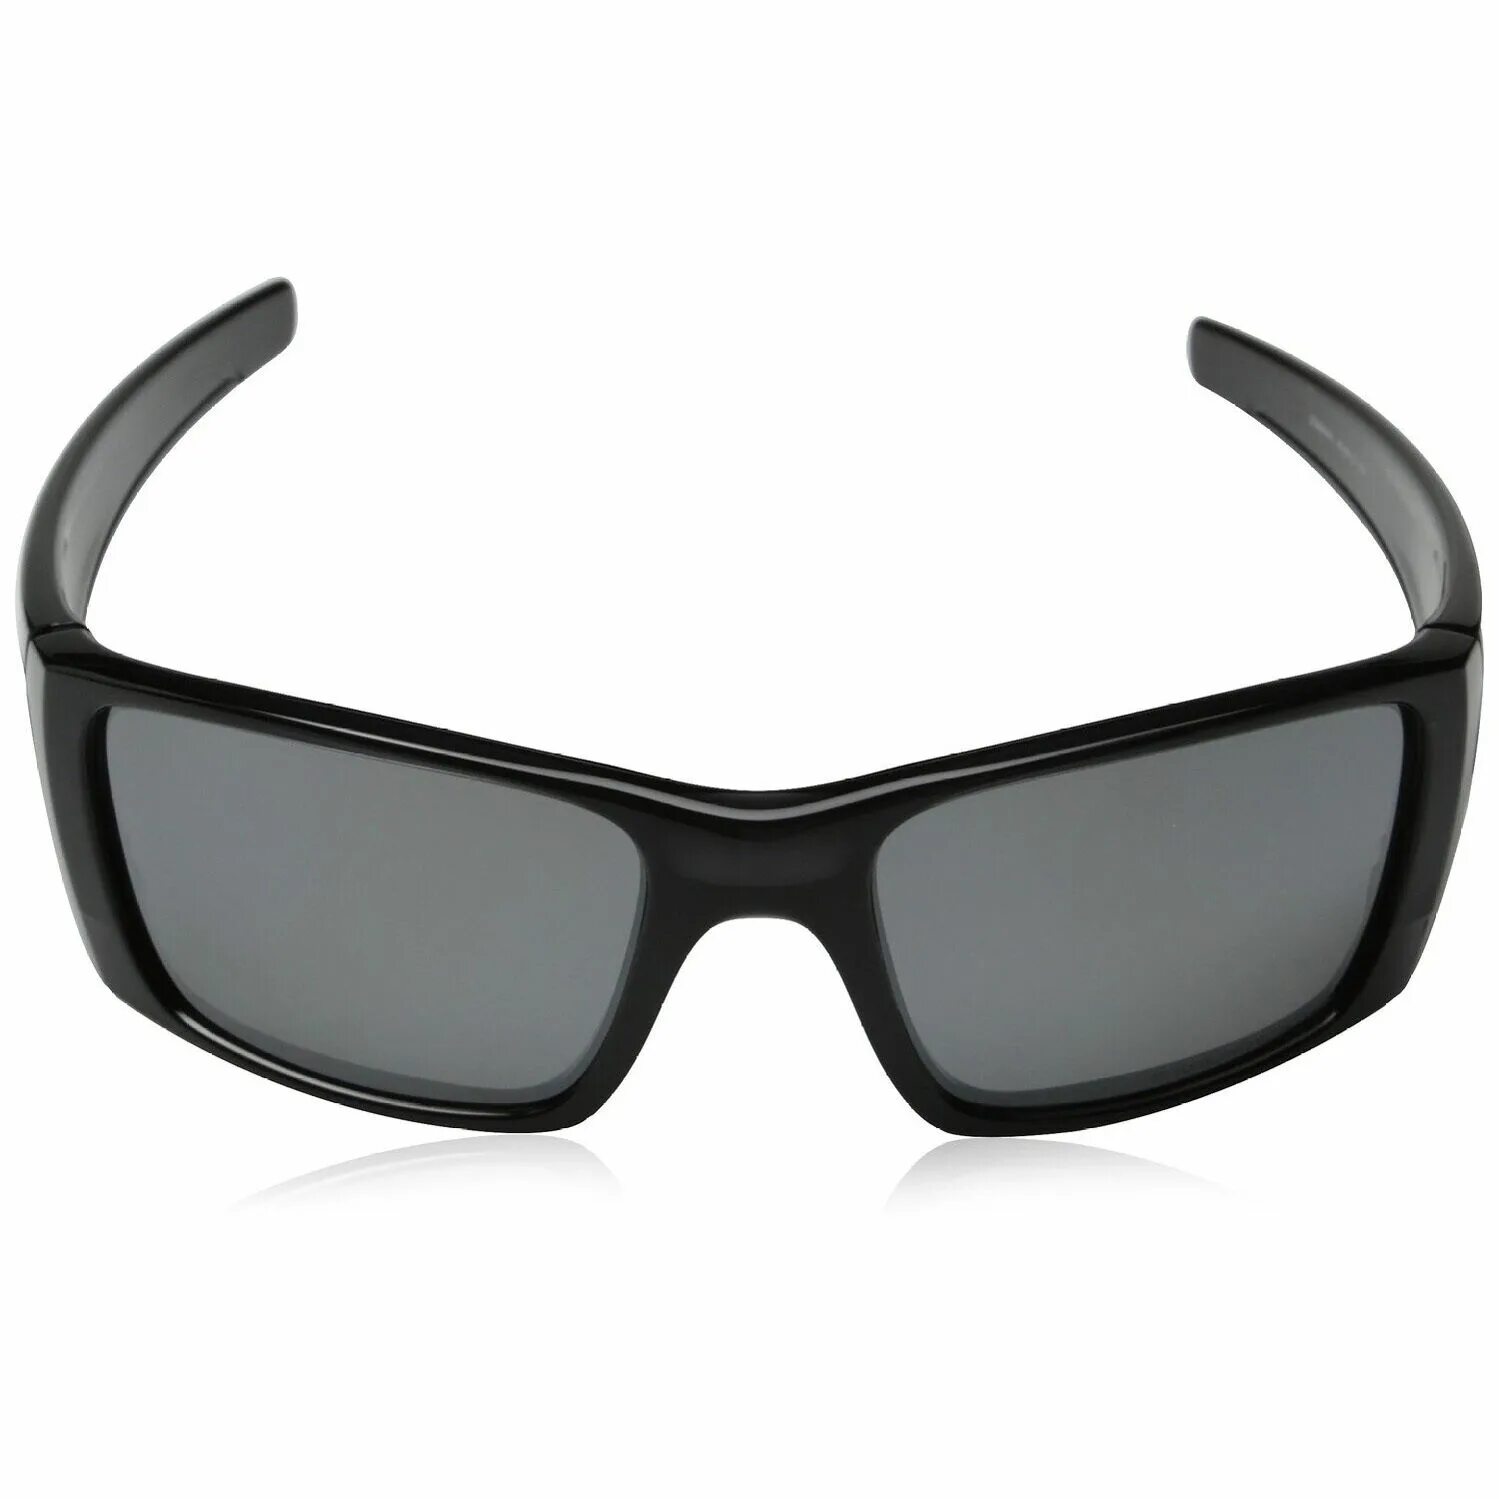 Oakley очки Front. Очки oakley черные. Прозрачные очки фронт. Gascan Iridium. Front sunglass